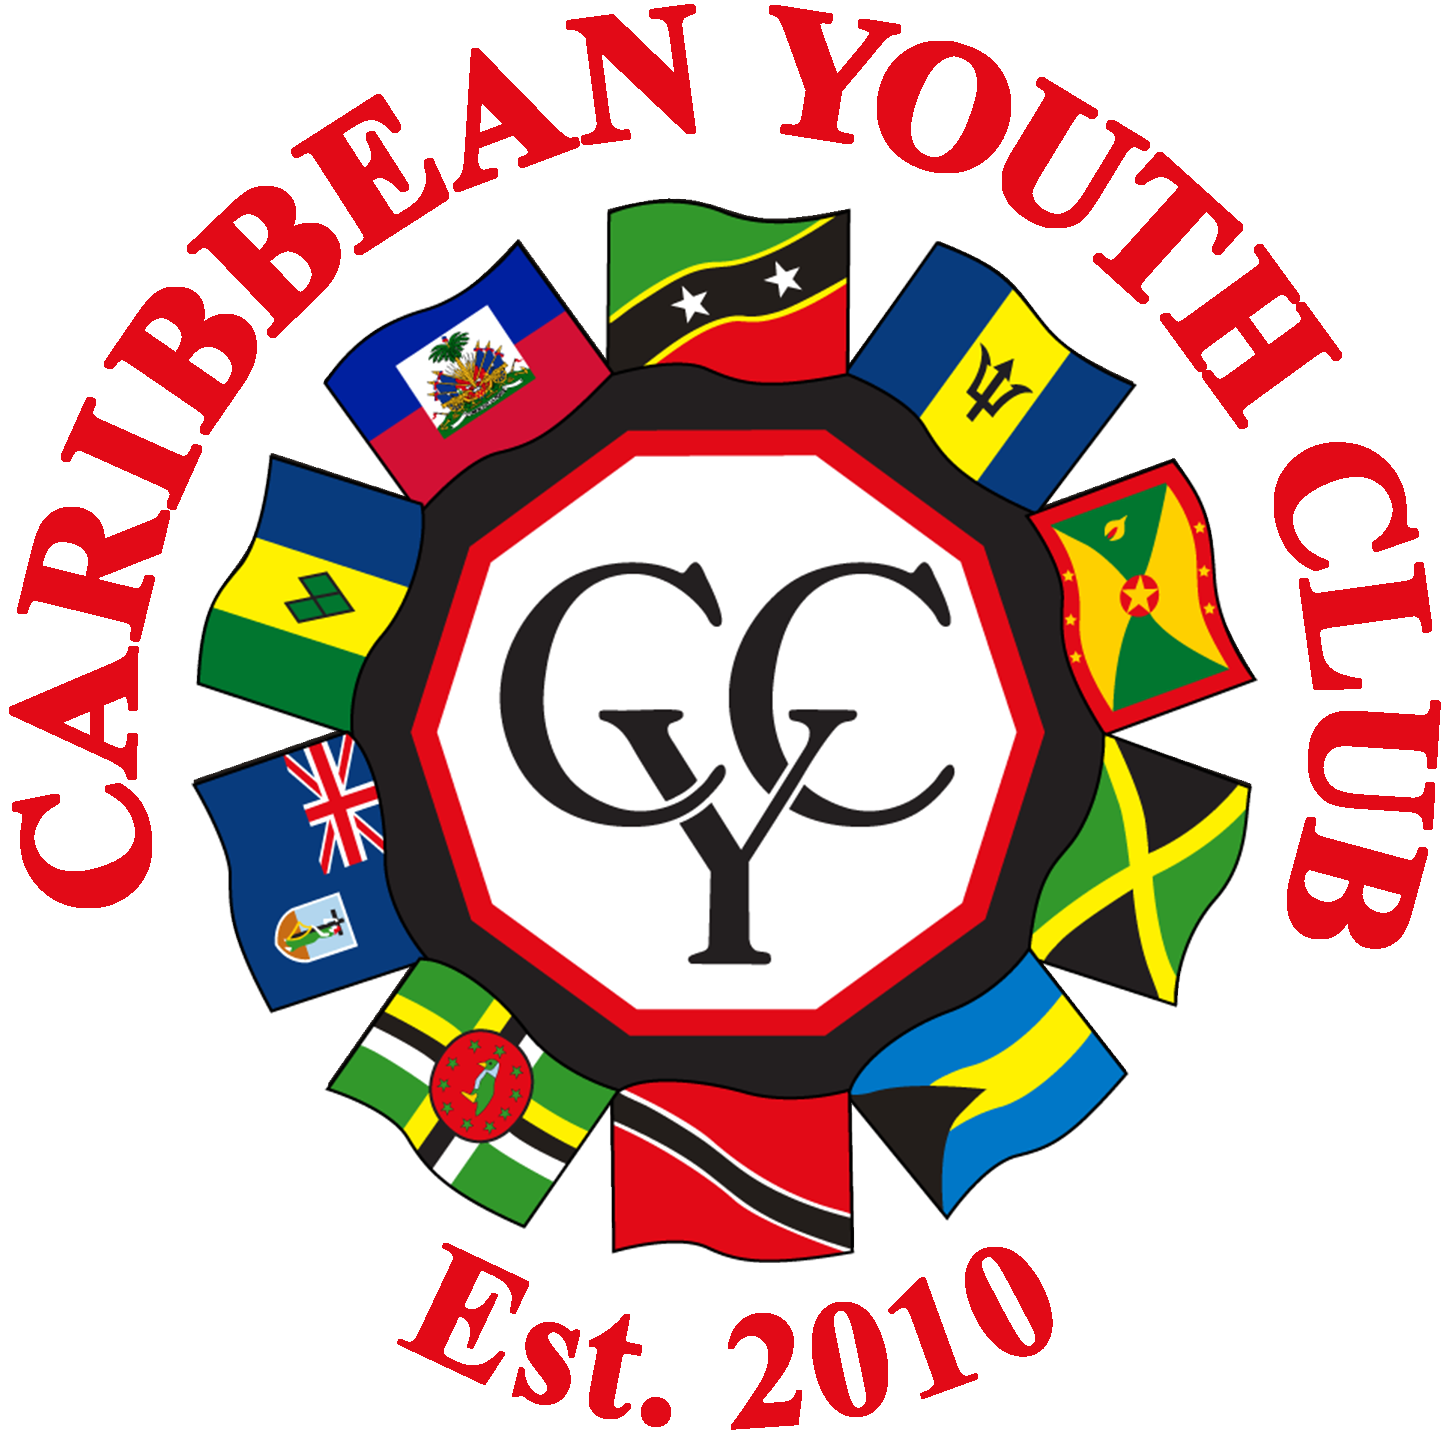 Caribbean Youth Club